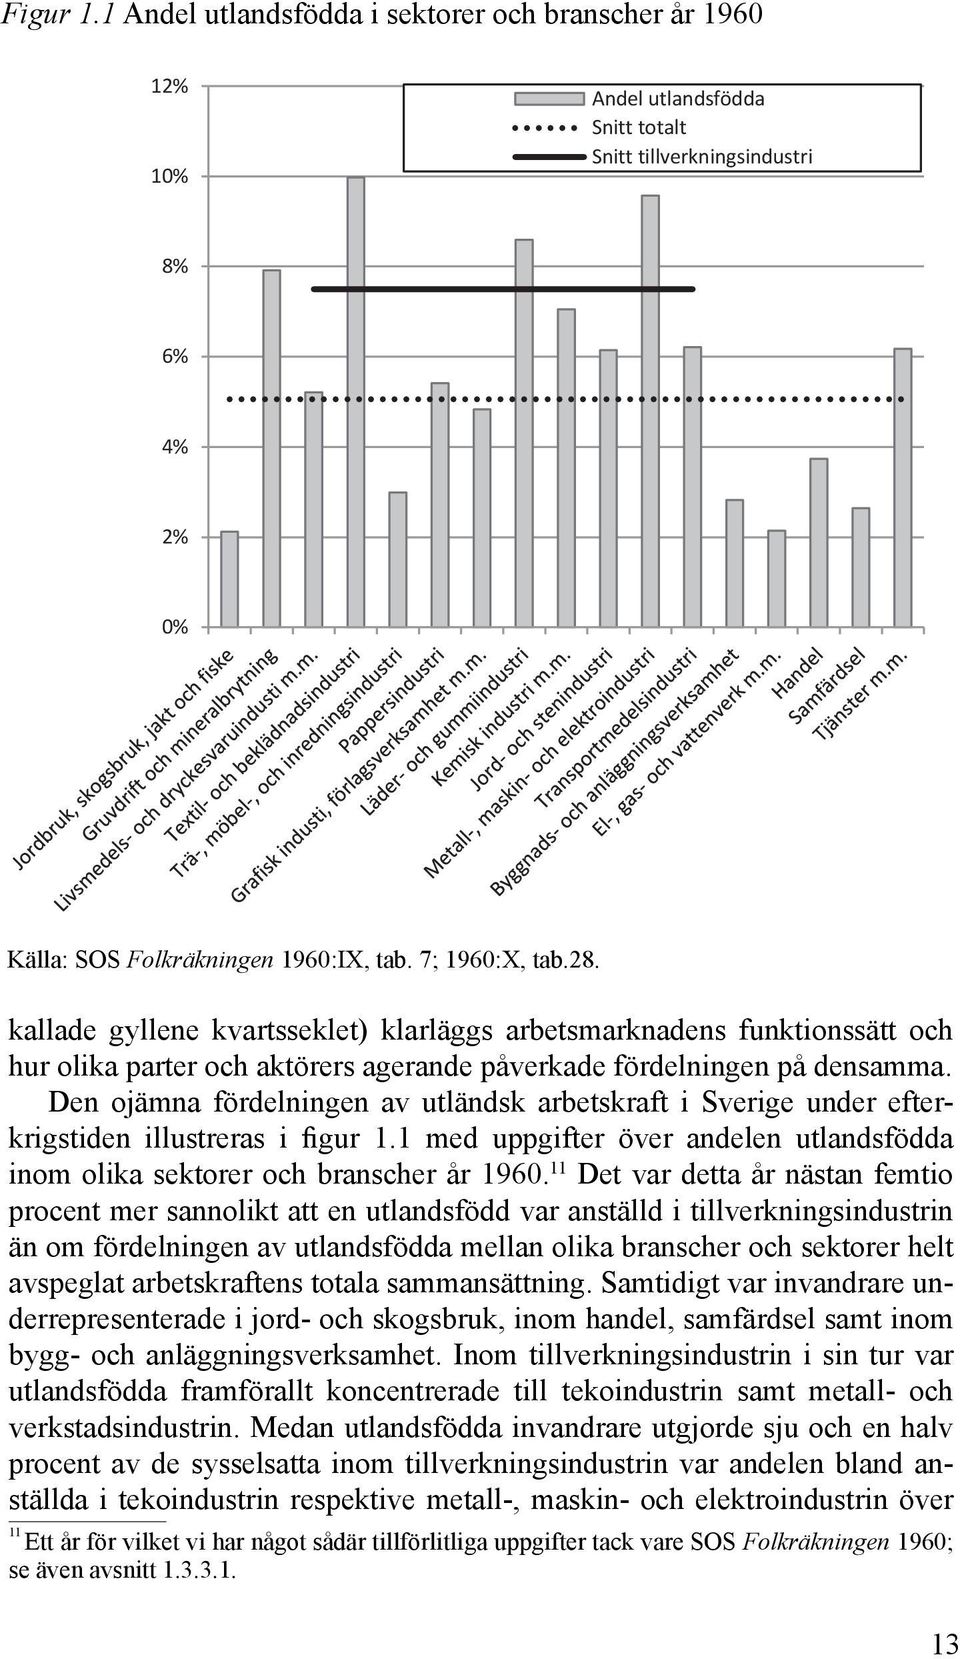 Den ojämna fördelningen av utländsk arbetskraft i Sverige under efterkrigstiden illustreras i figur 1.1 med uppgifter över andelen utlandsfödda inom olika sektorer och branscher år 1960.